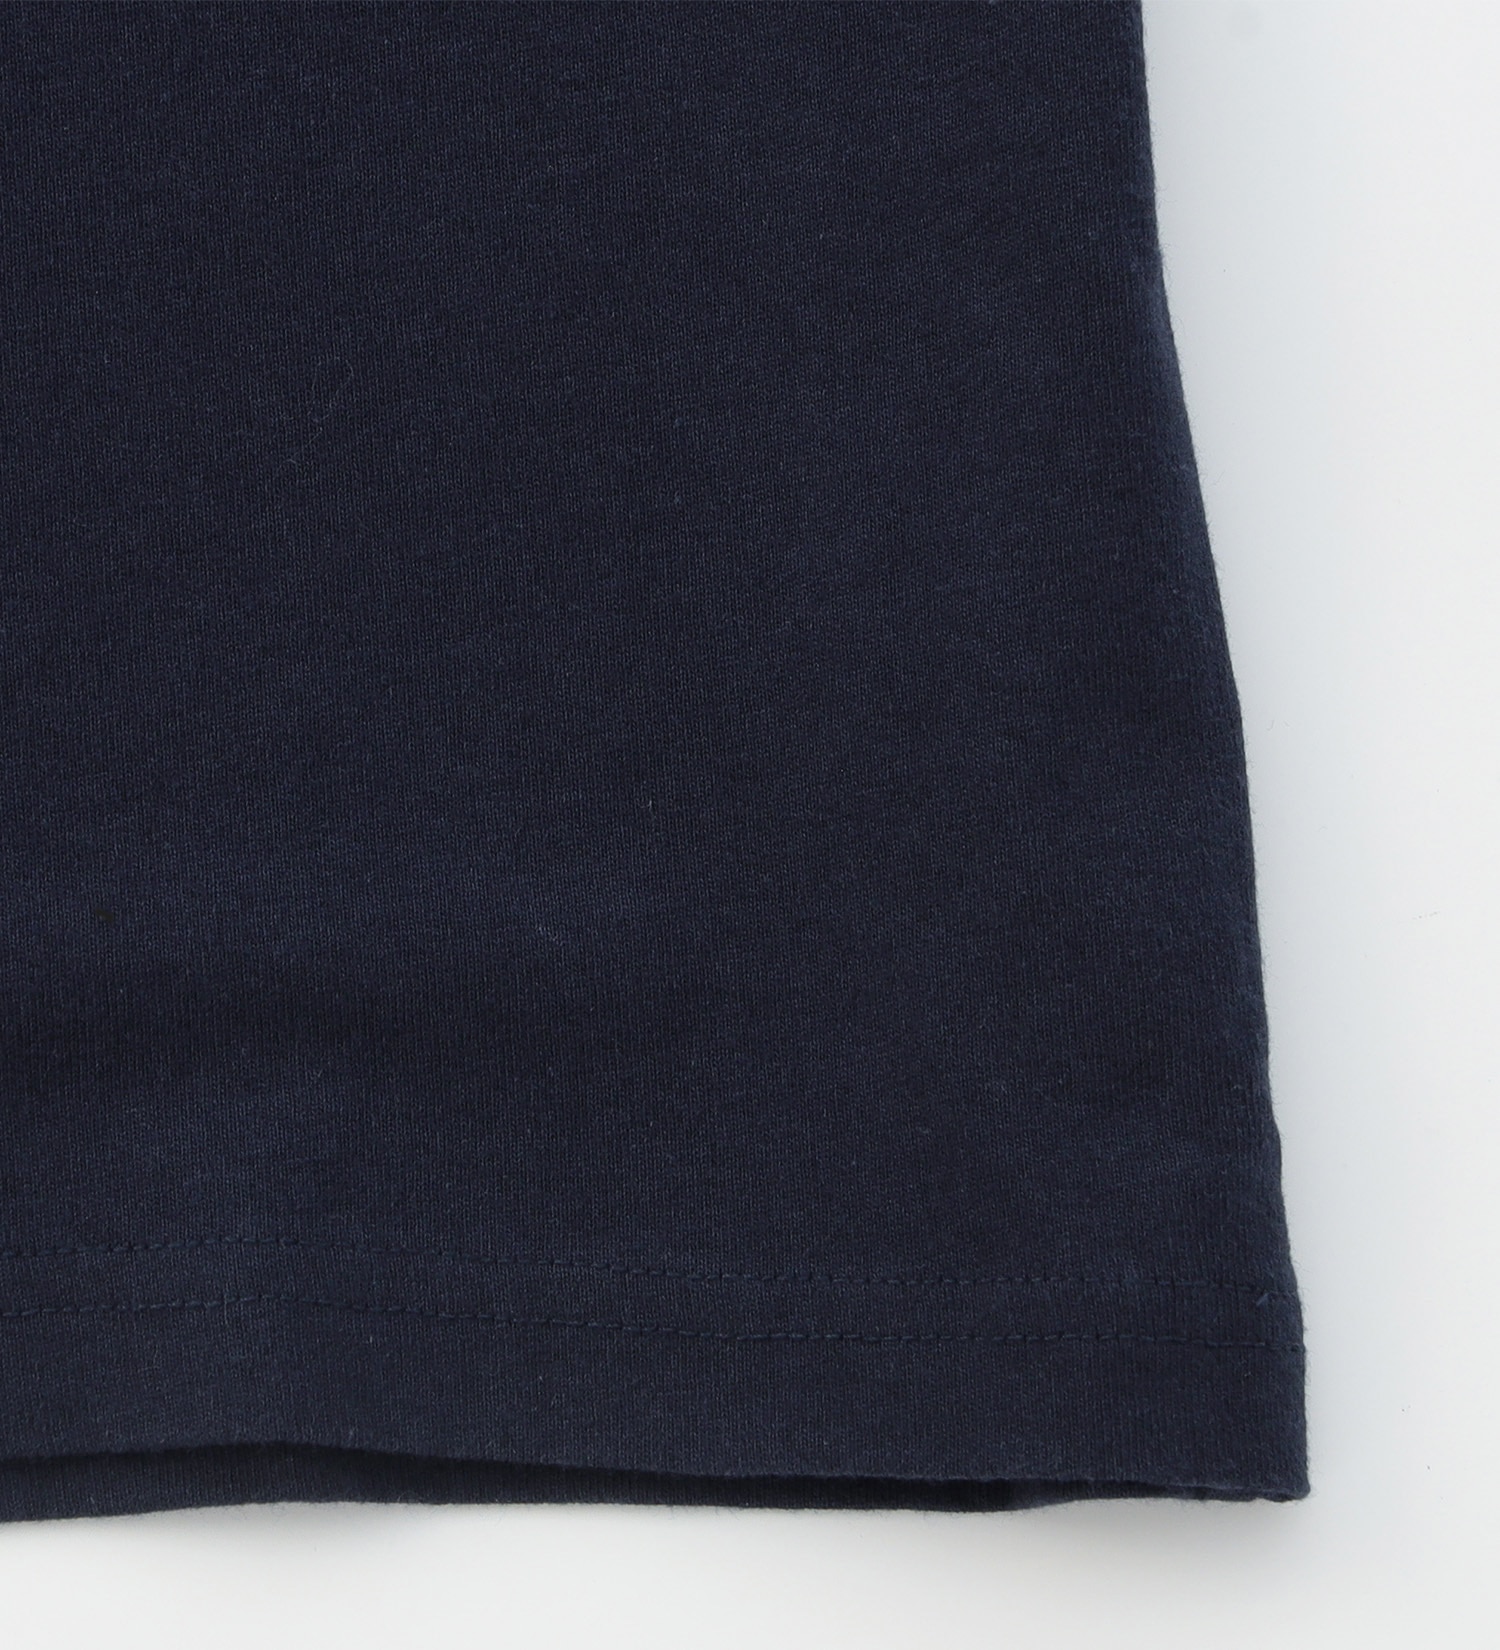 EDWIN(エドウイン)のボックスロゴプリントTシャツ 半袖【アウトレット店舗・WEB限定】|トップス/Tシャツ/カットソー/メンズ|ネイビー